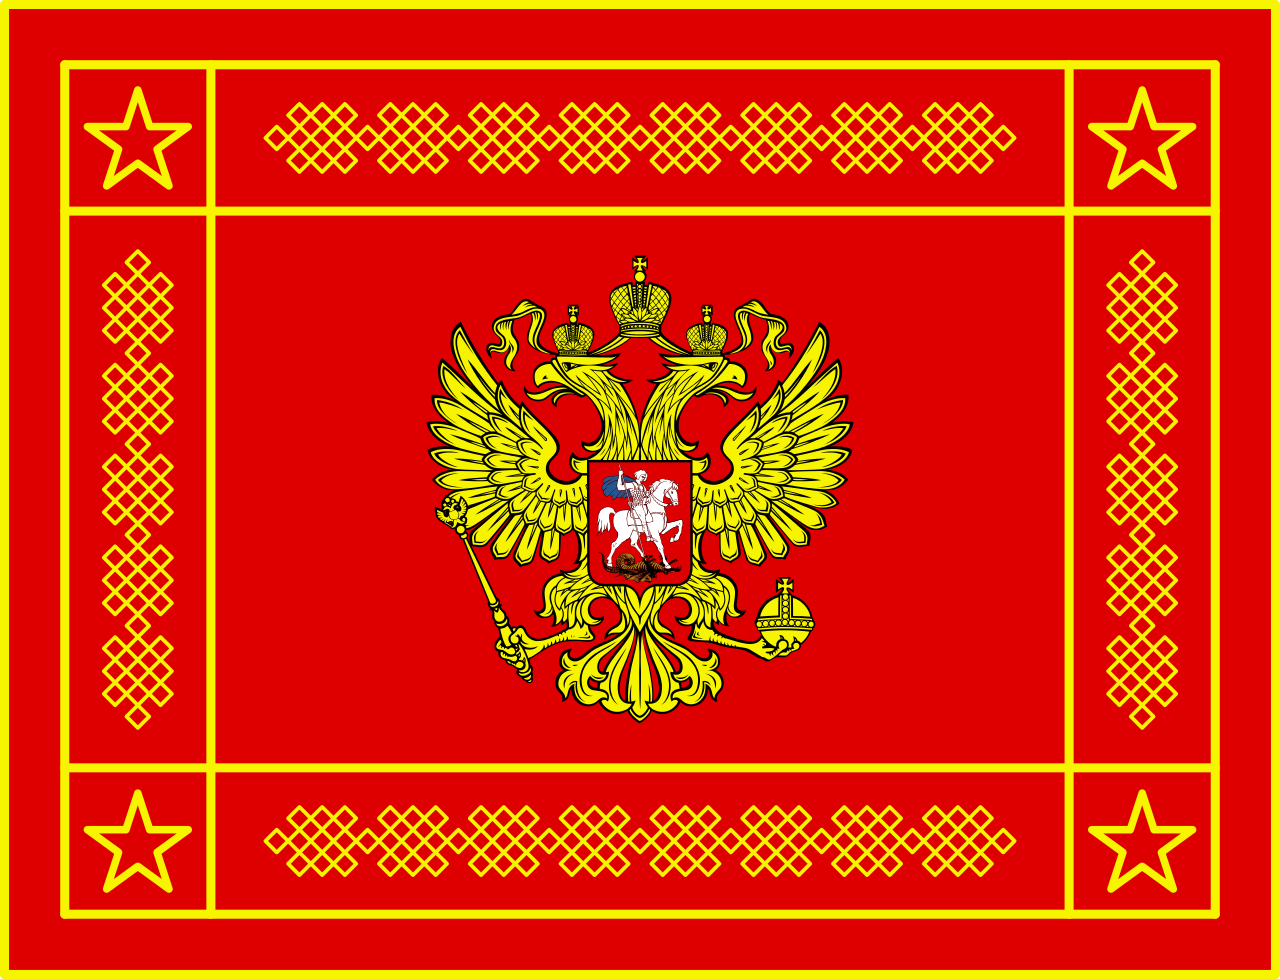 俄羅斯聯邦武裝力量旗幟 正面